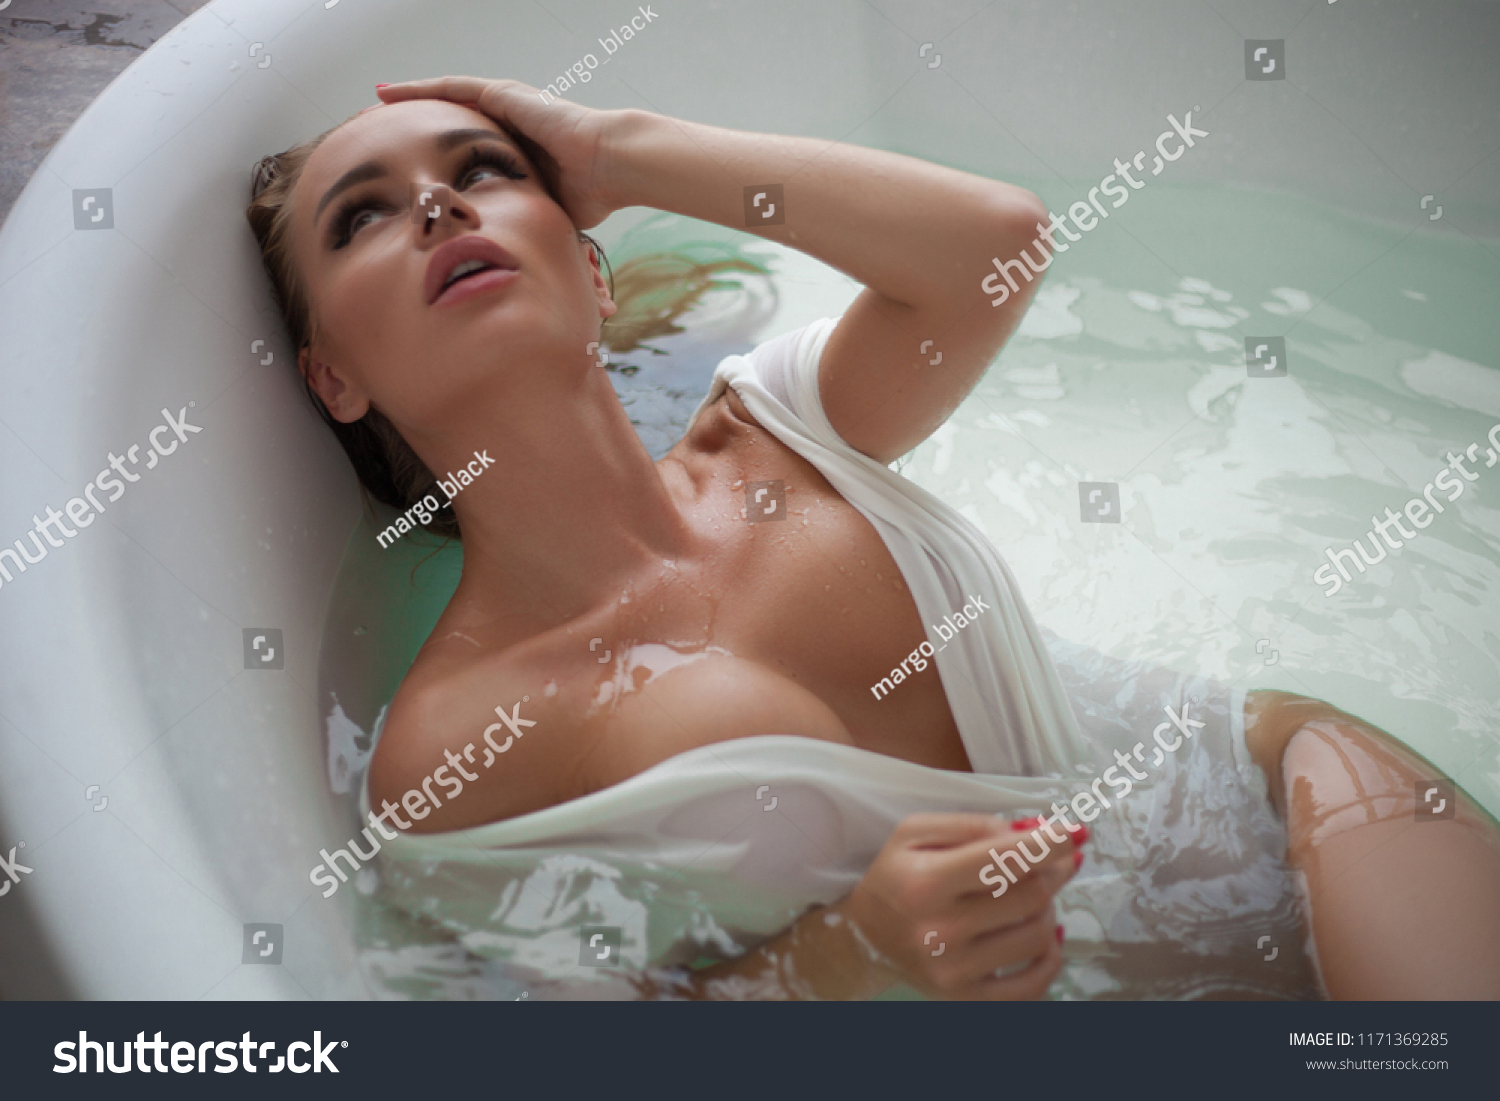 Busty Women In Shower